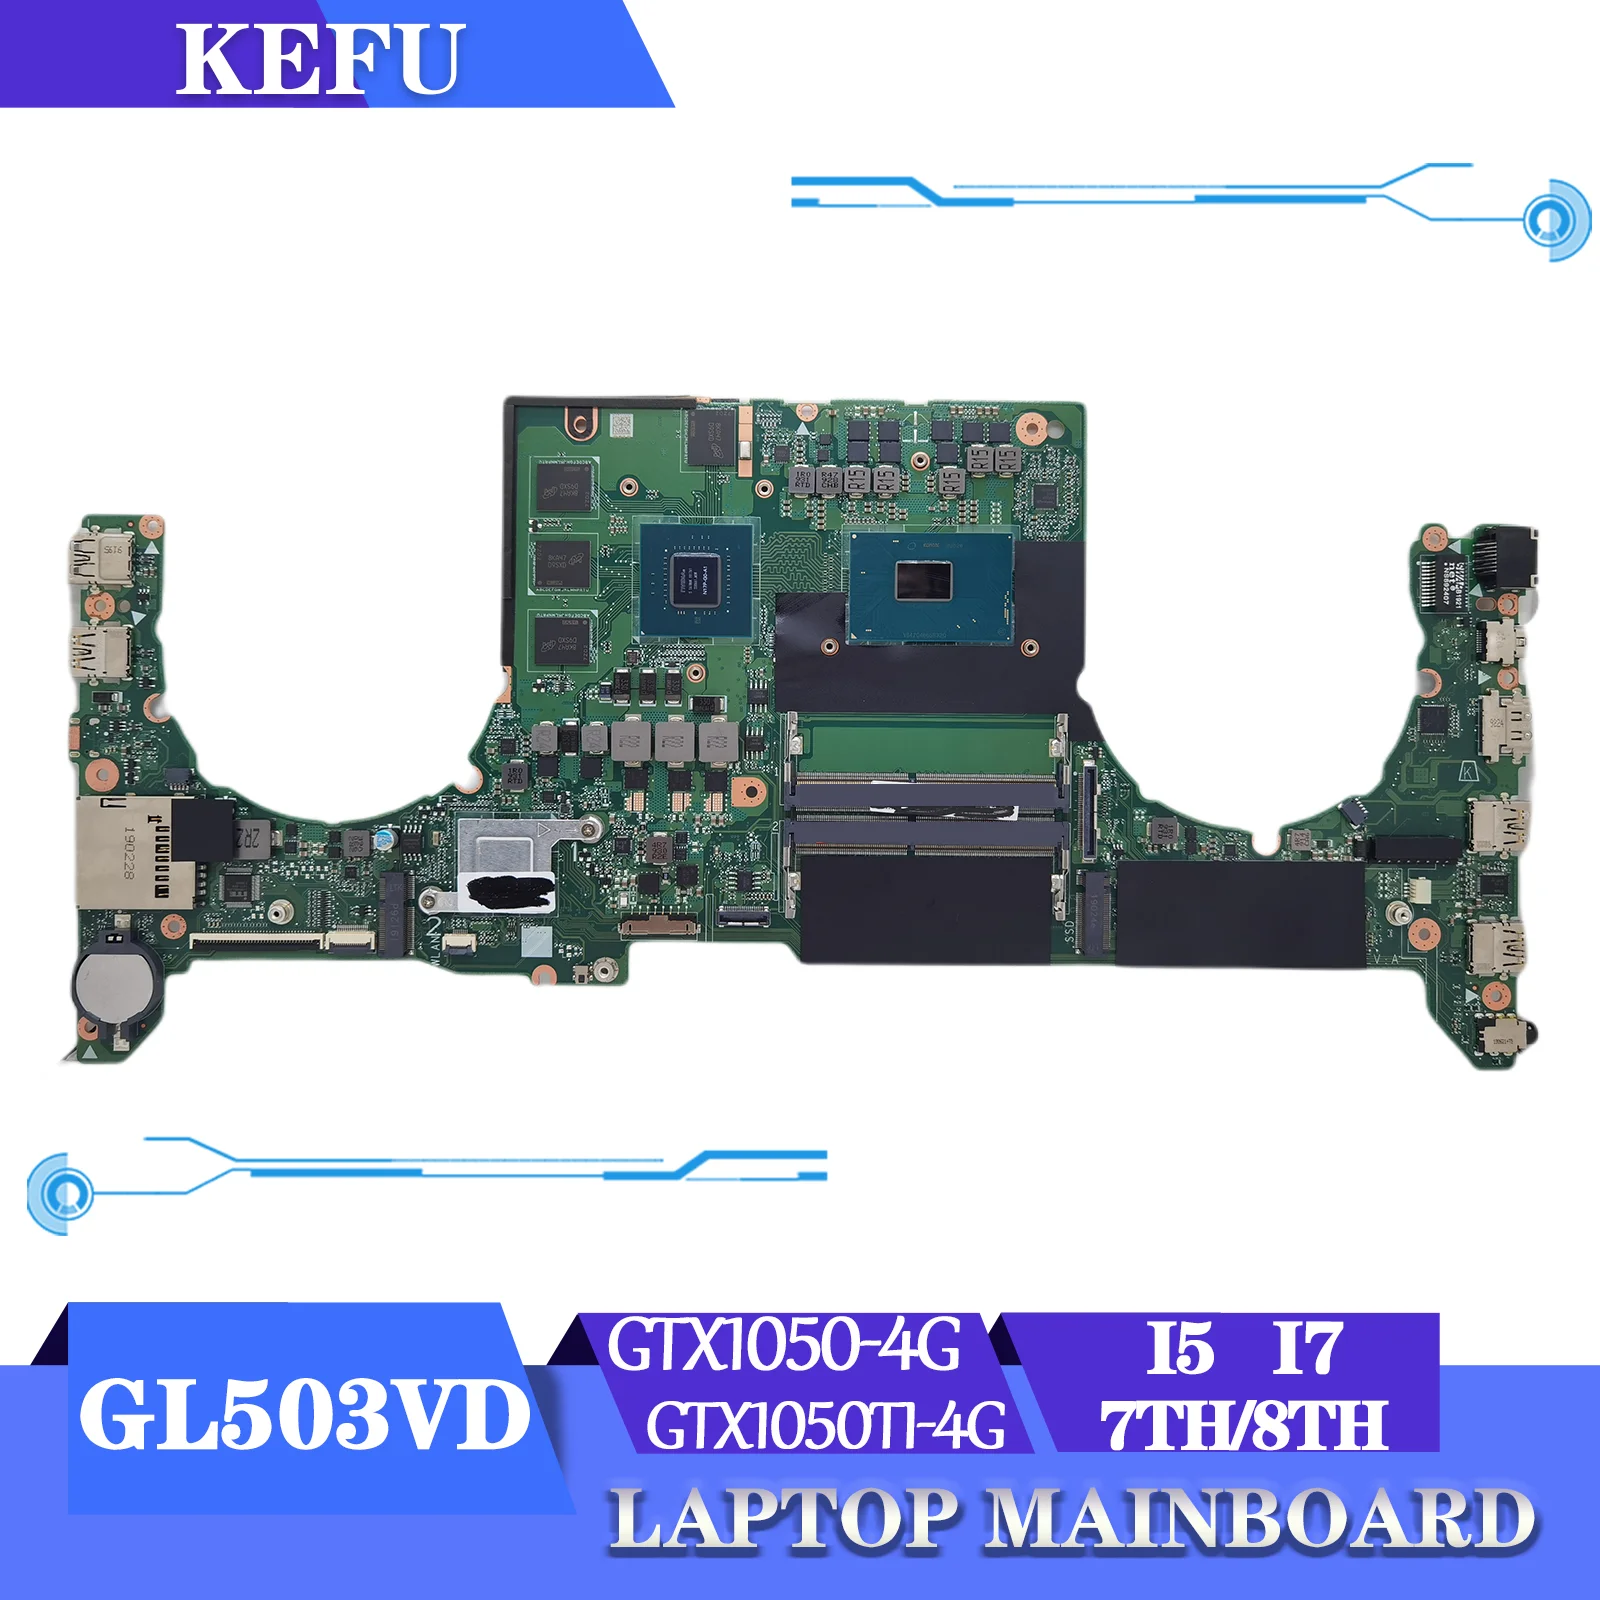 

KEFU Original Mainboard GL503VD For ASUS FX63VD ZX63V S5A FZ63VD FX503VD Laptop Motherboard I5 I7 7th/8th GTX1050 GTX1050Ti V4G